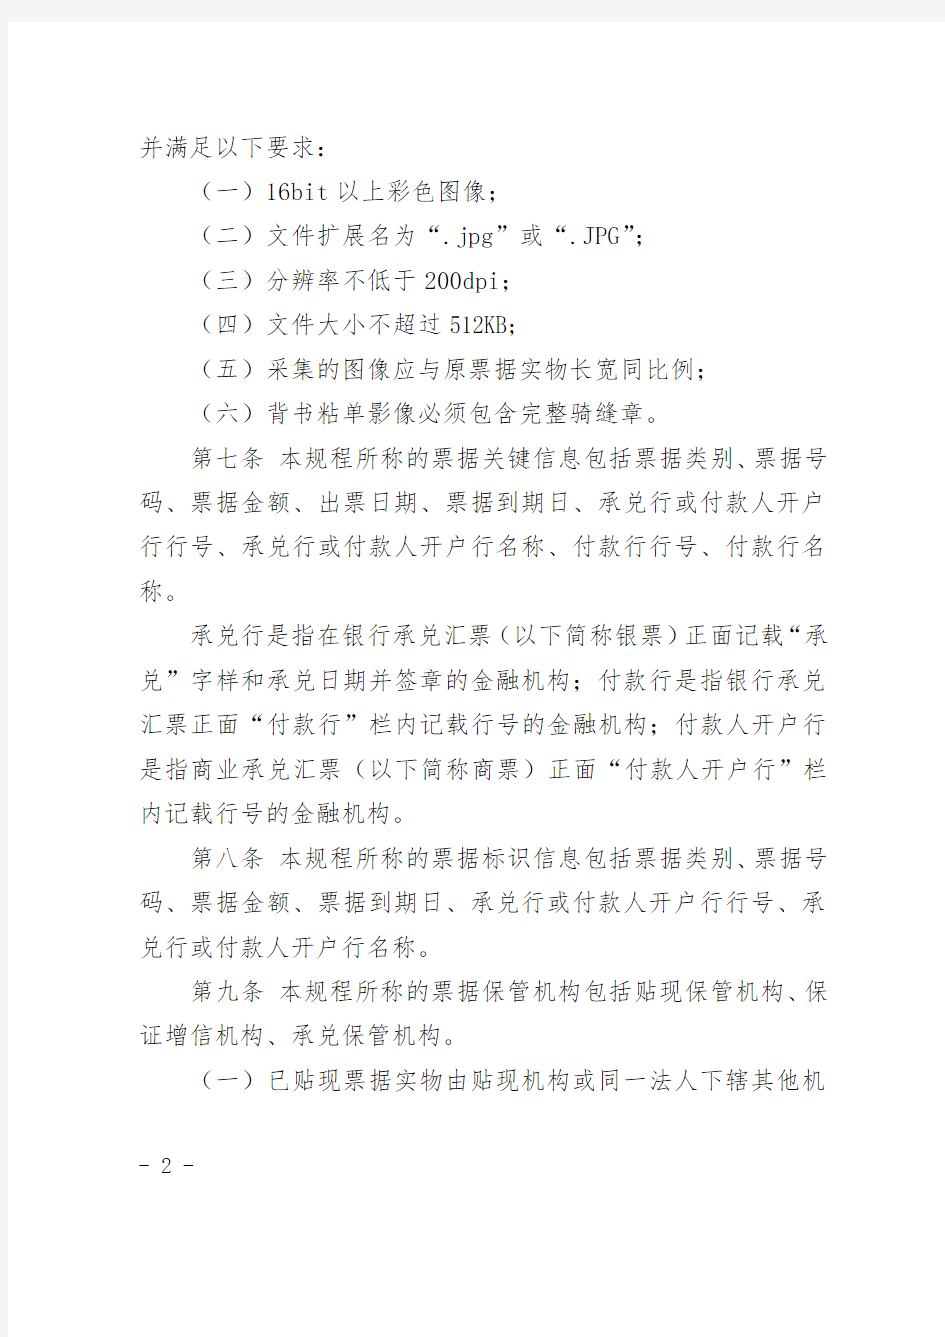 上海票据交易所纸质商业汇票业务操作规程